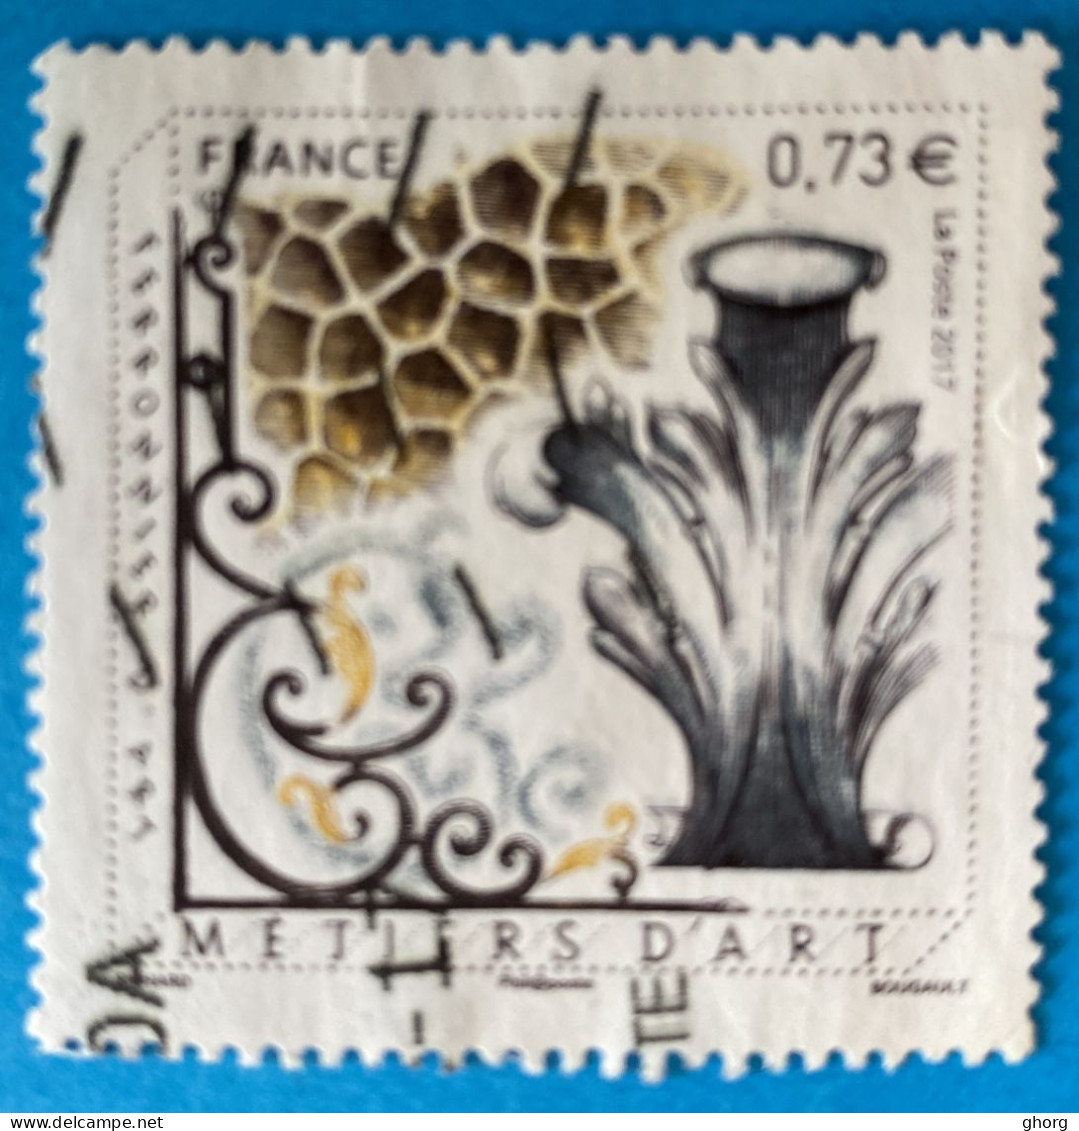 France 2017 : Les Métiers D'Art. Feronnier D'art N° 5135 Oblitéré - Used Stamps